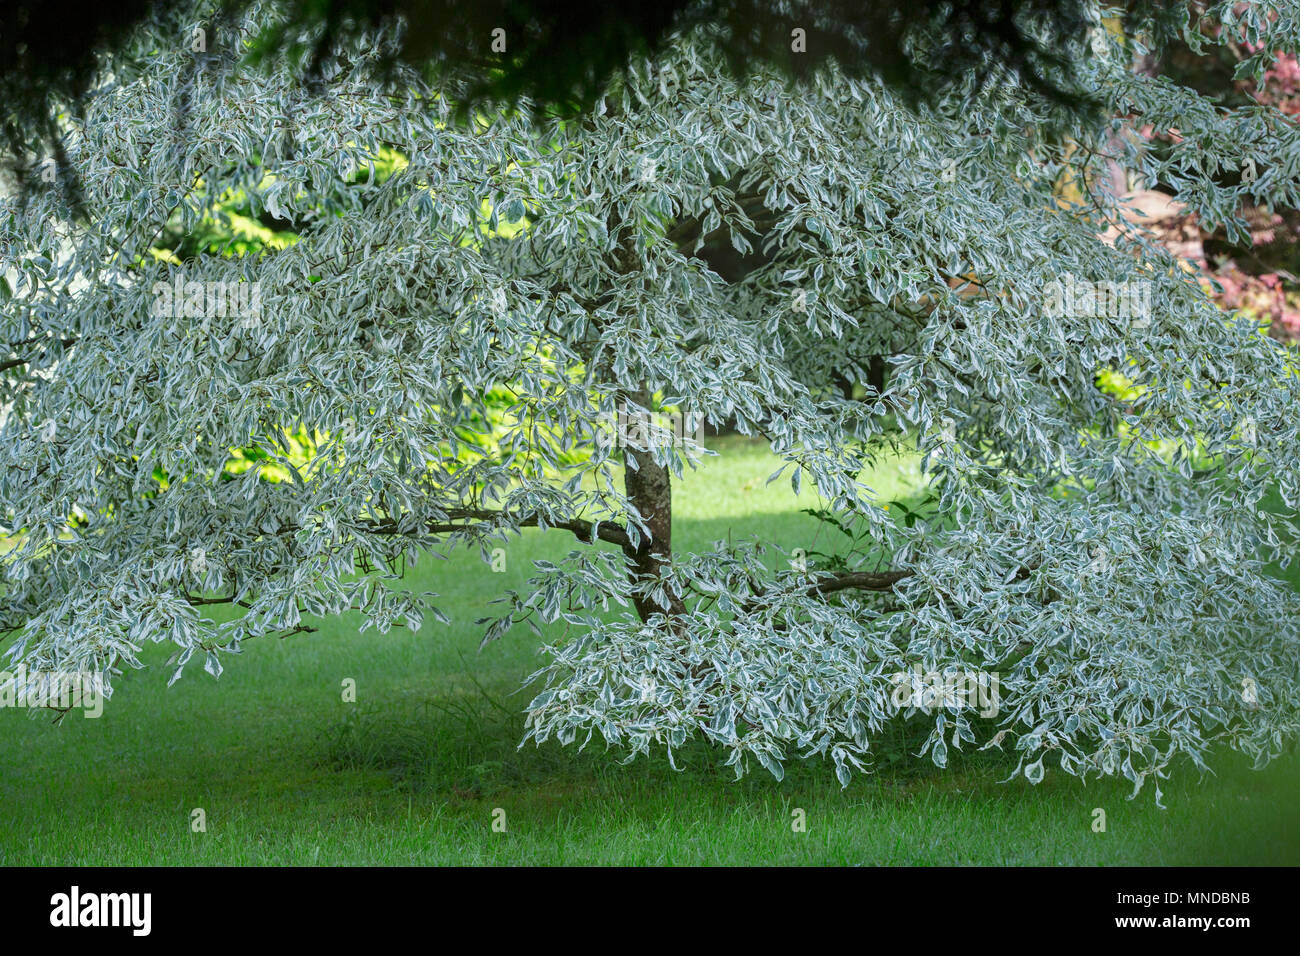 Zamburiña ornamentales árbol con las ramas bajas en medio de un jardín. Foto de stock